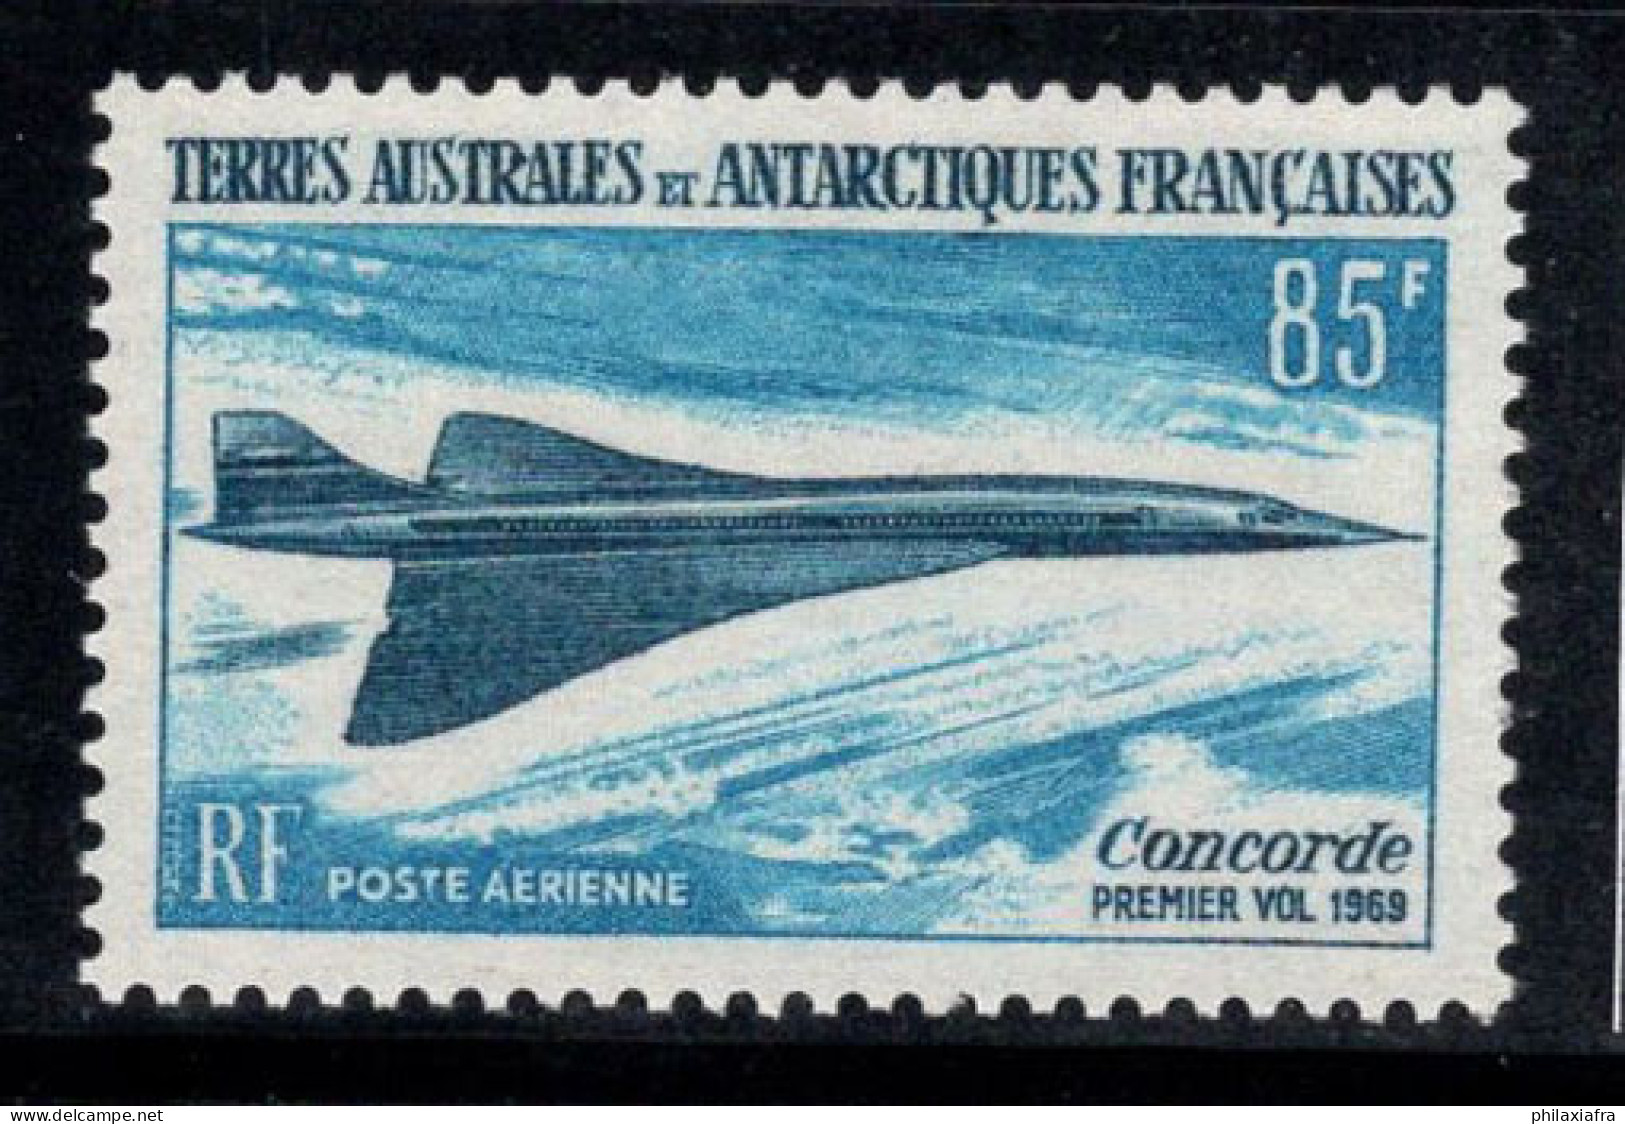 Territoire Antarctique Français TAAF 1969 Mi. 51 Neuf ** 100% Poste Aérienne 85 Fr, Le Concorde,Avion - Ungebraucht